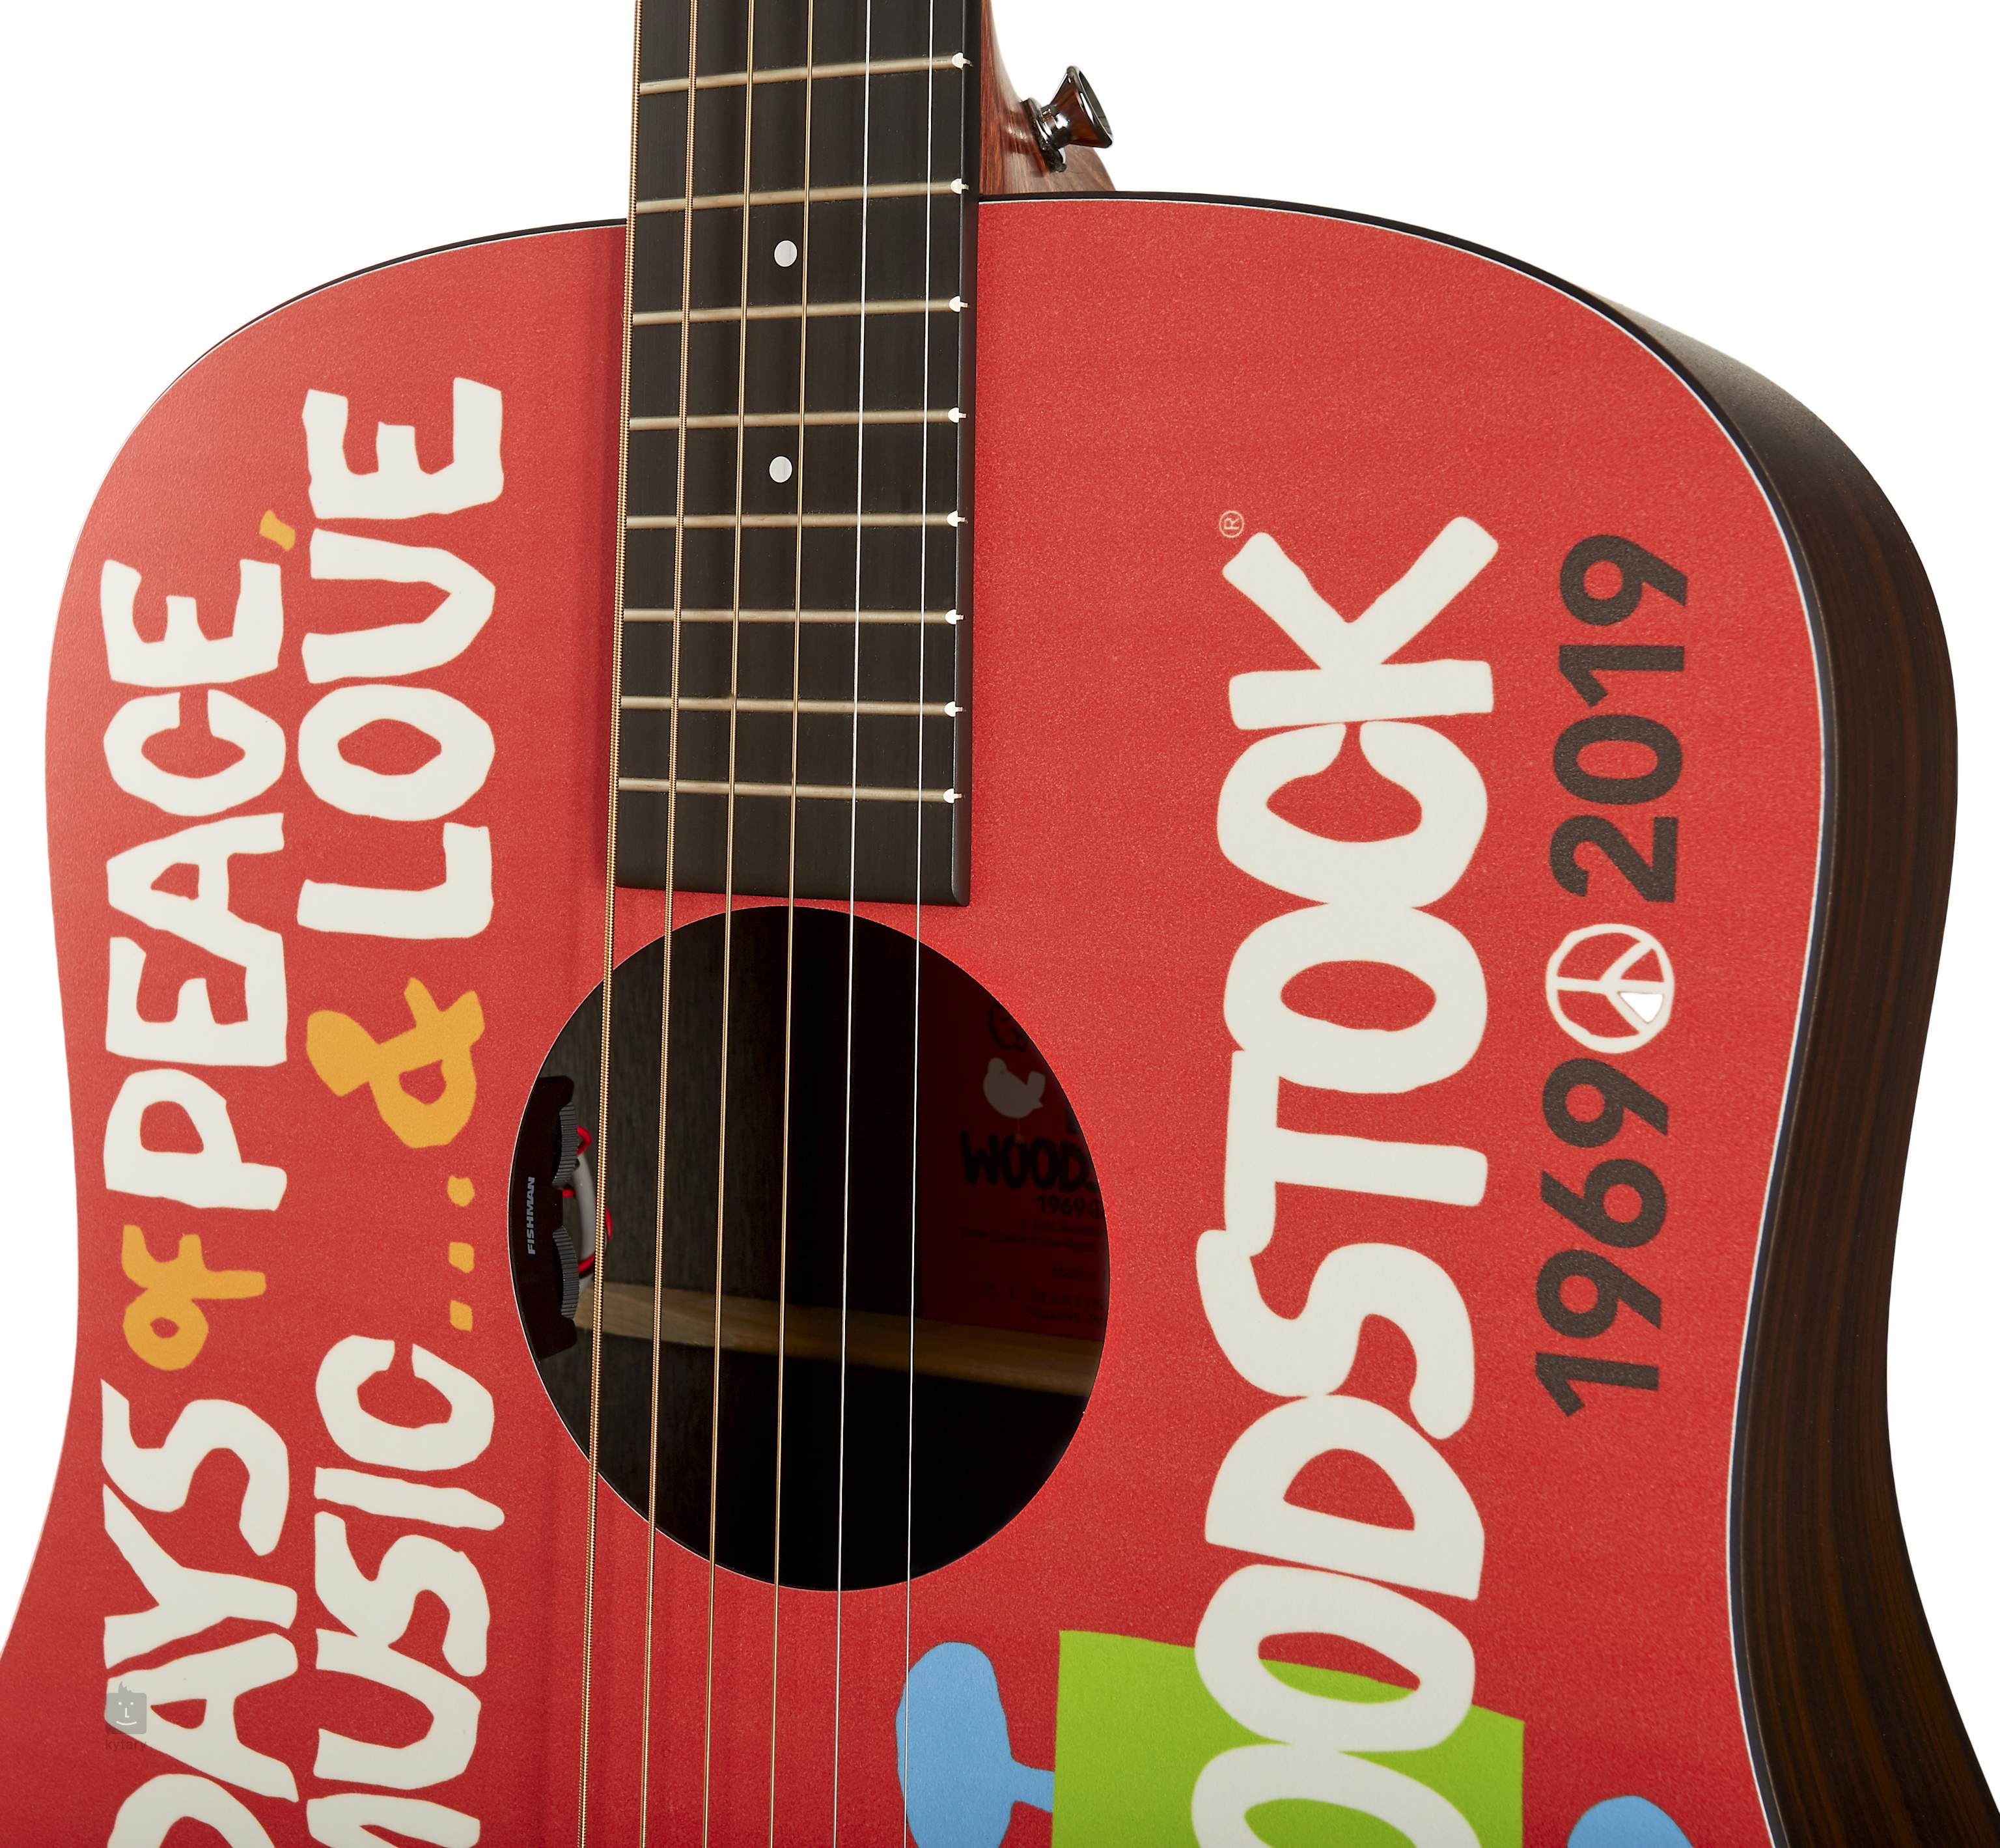 Đàn Guitar Martin X Series DX Woodstock 50th Acoustic - Việt Music